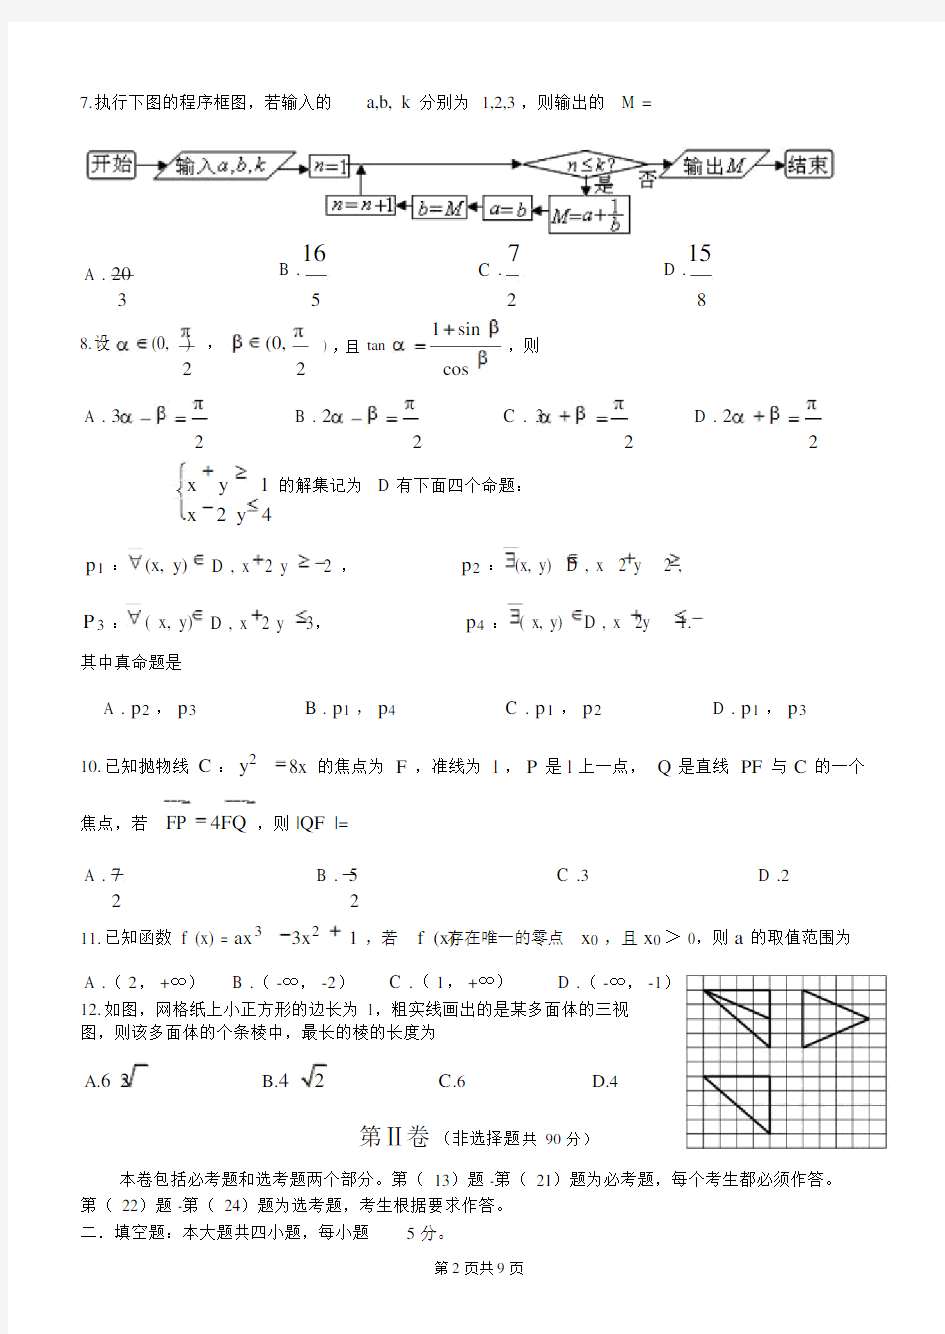 2014年高考数学全国卷1(理科)